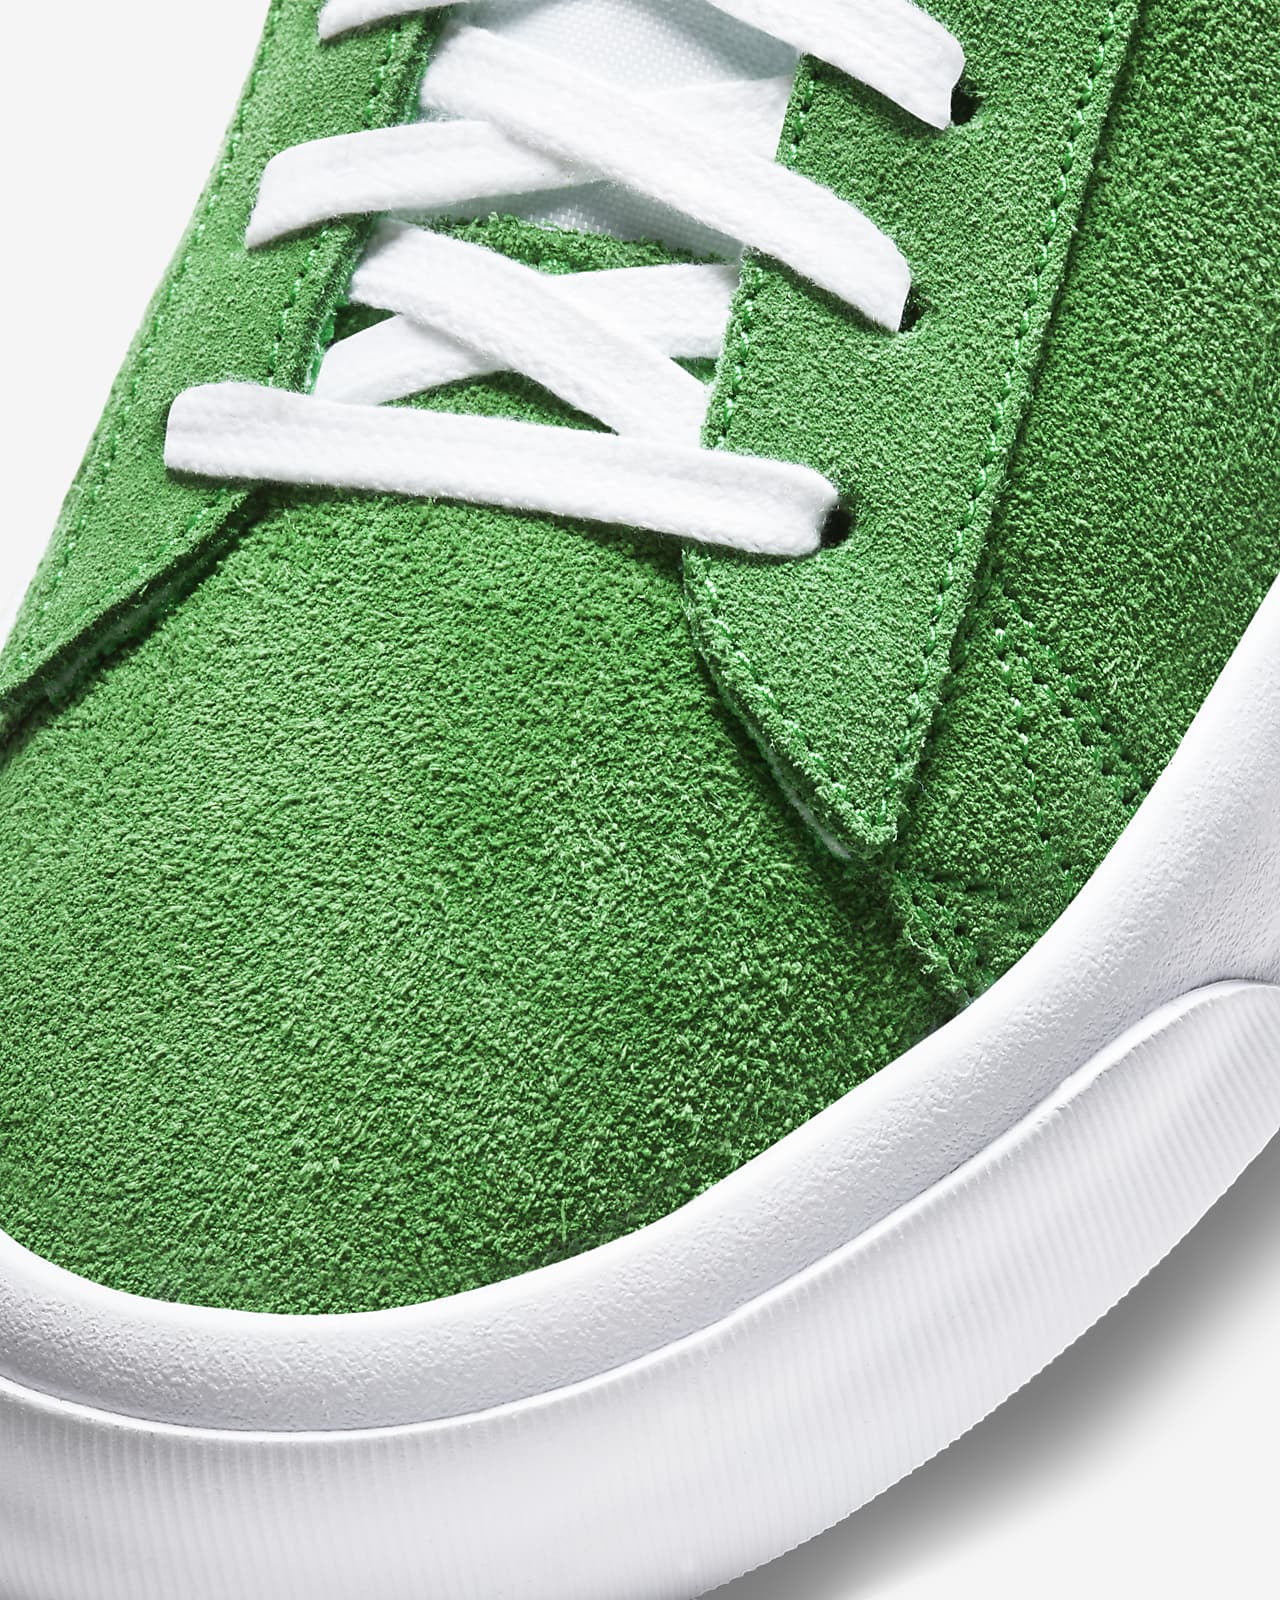 nike skate shoes green